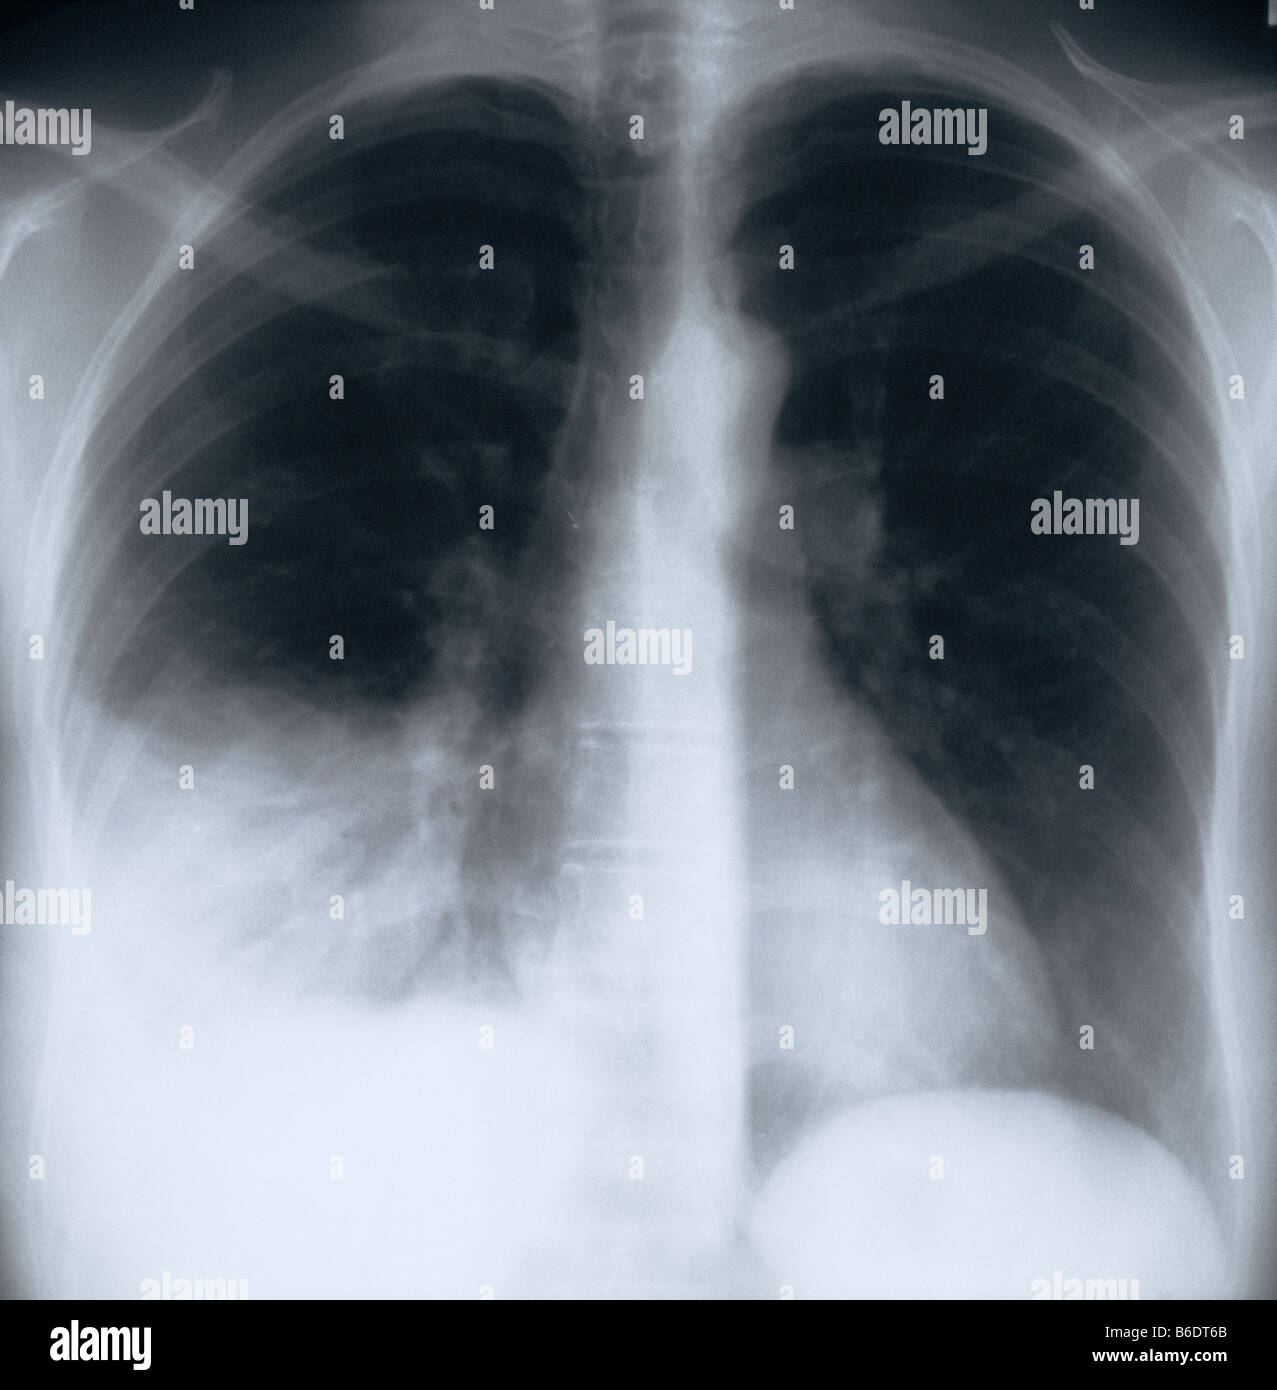 La polmonite. Raggi X del torace di un paziente con polmonite batterica nel lobo inferiore del polmone destro. Foto Stock